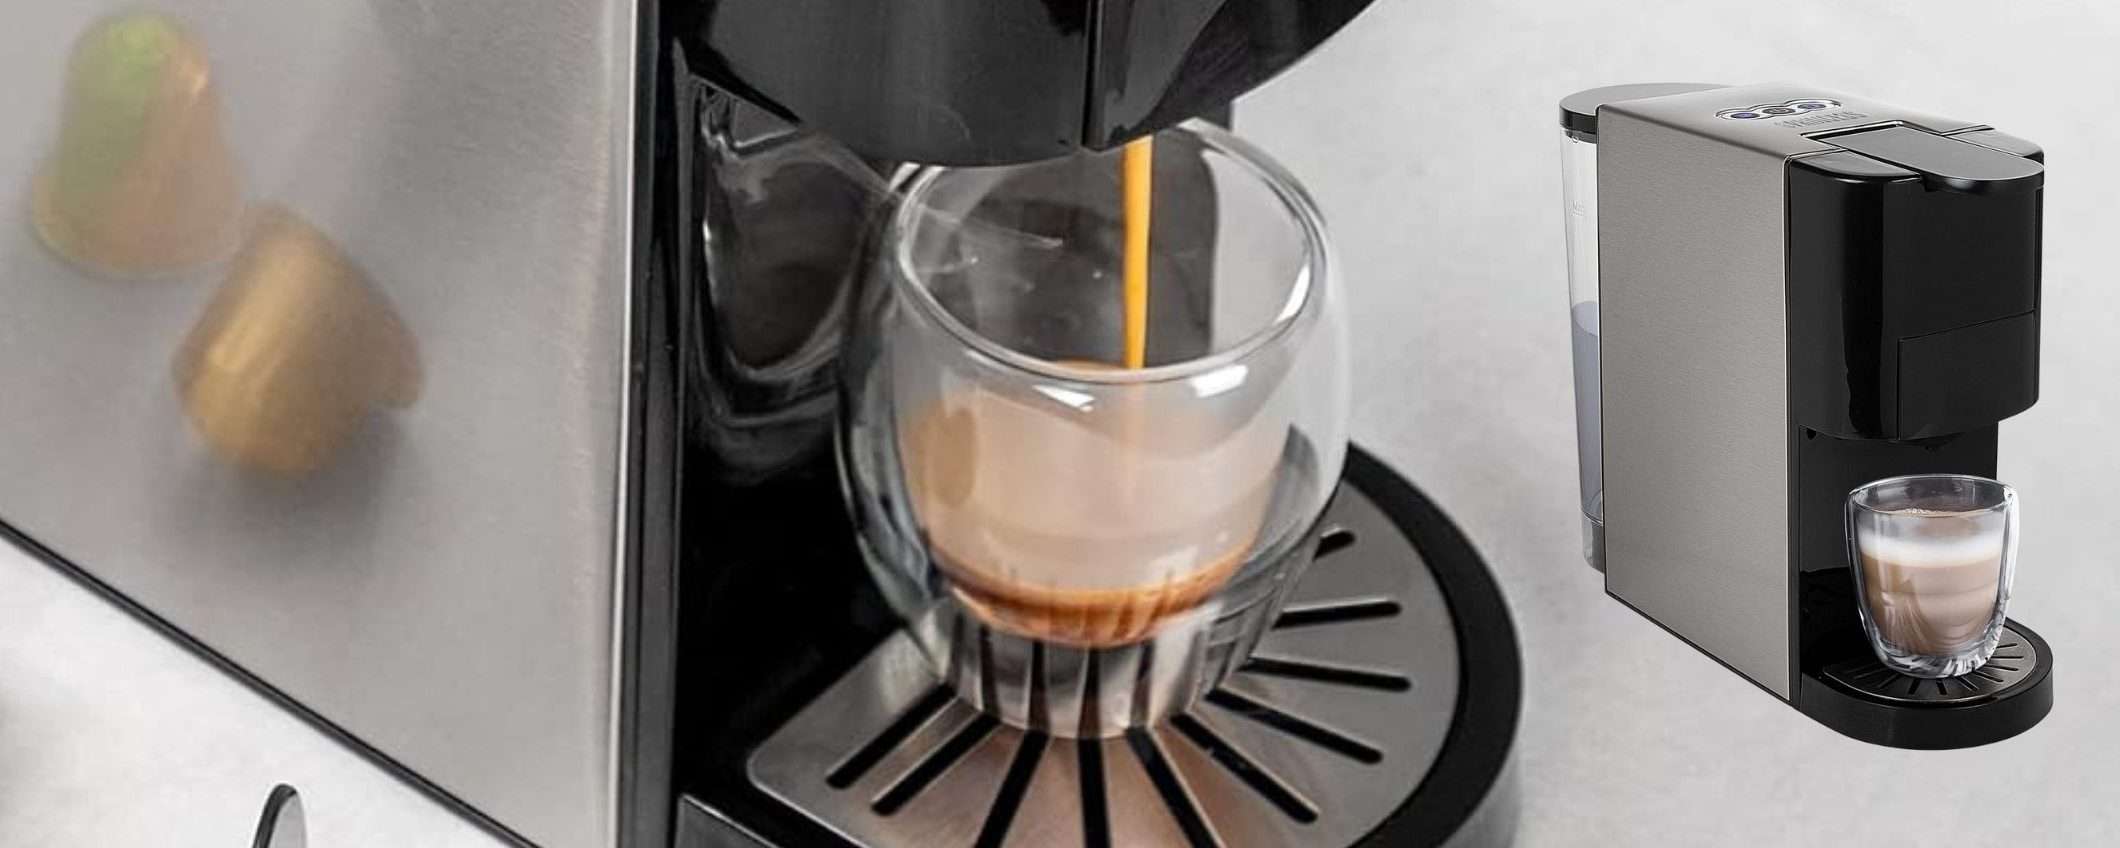 Questa macchina da caffè 4 in 1 è PAZZESCA: capsule, cialde e polvere (90€)